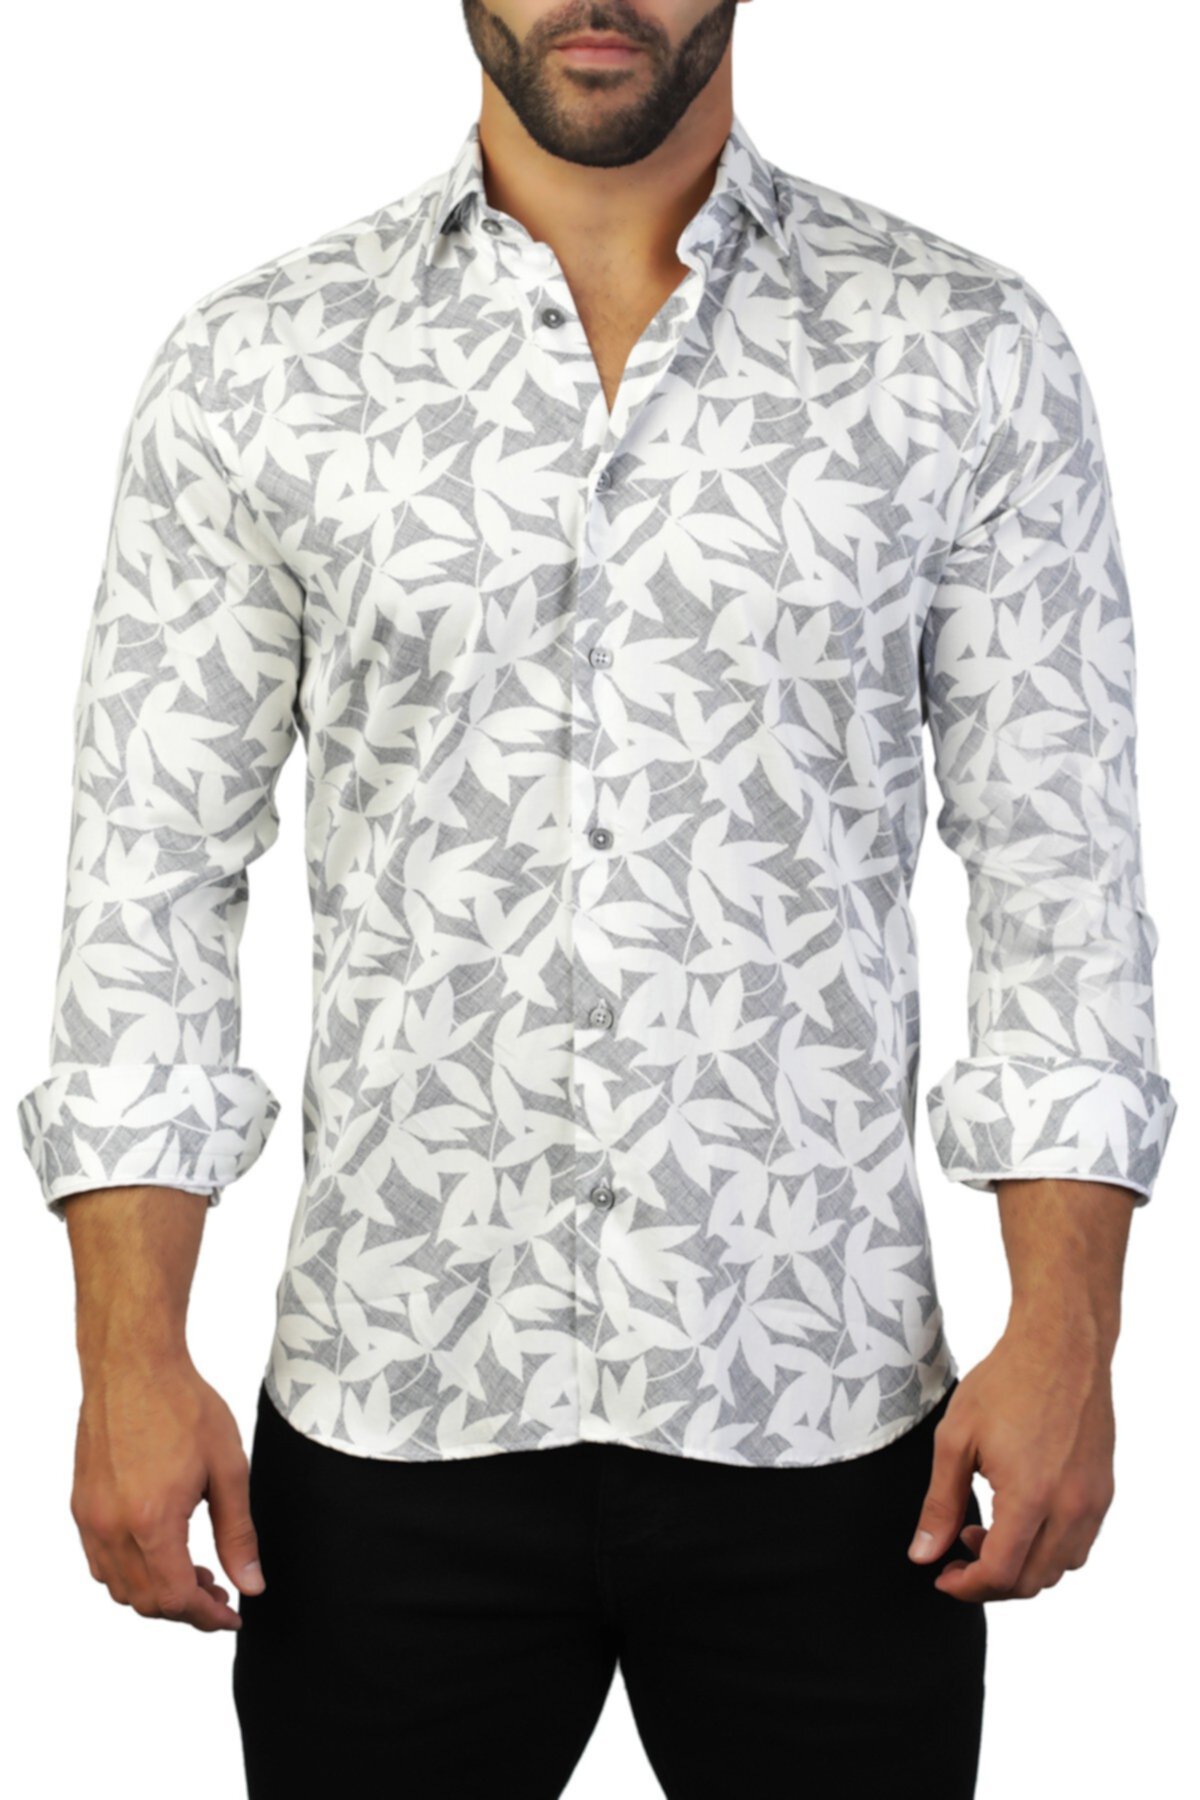 Классическая рубашка с принтом листьев Фибоначчи Maceoo